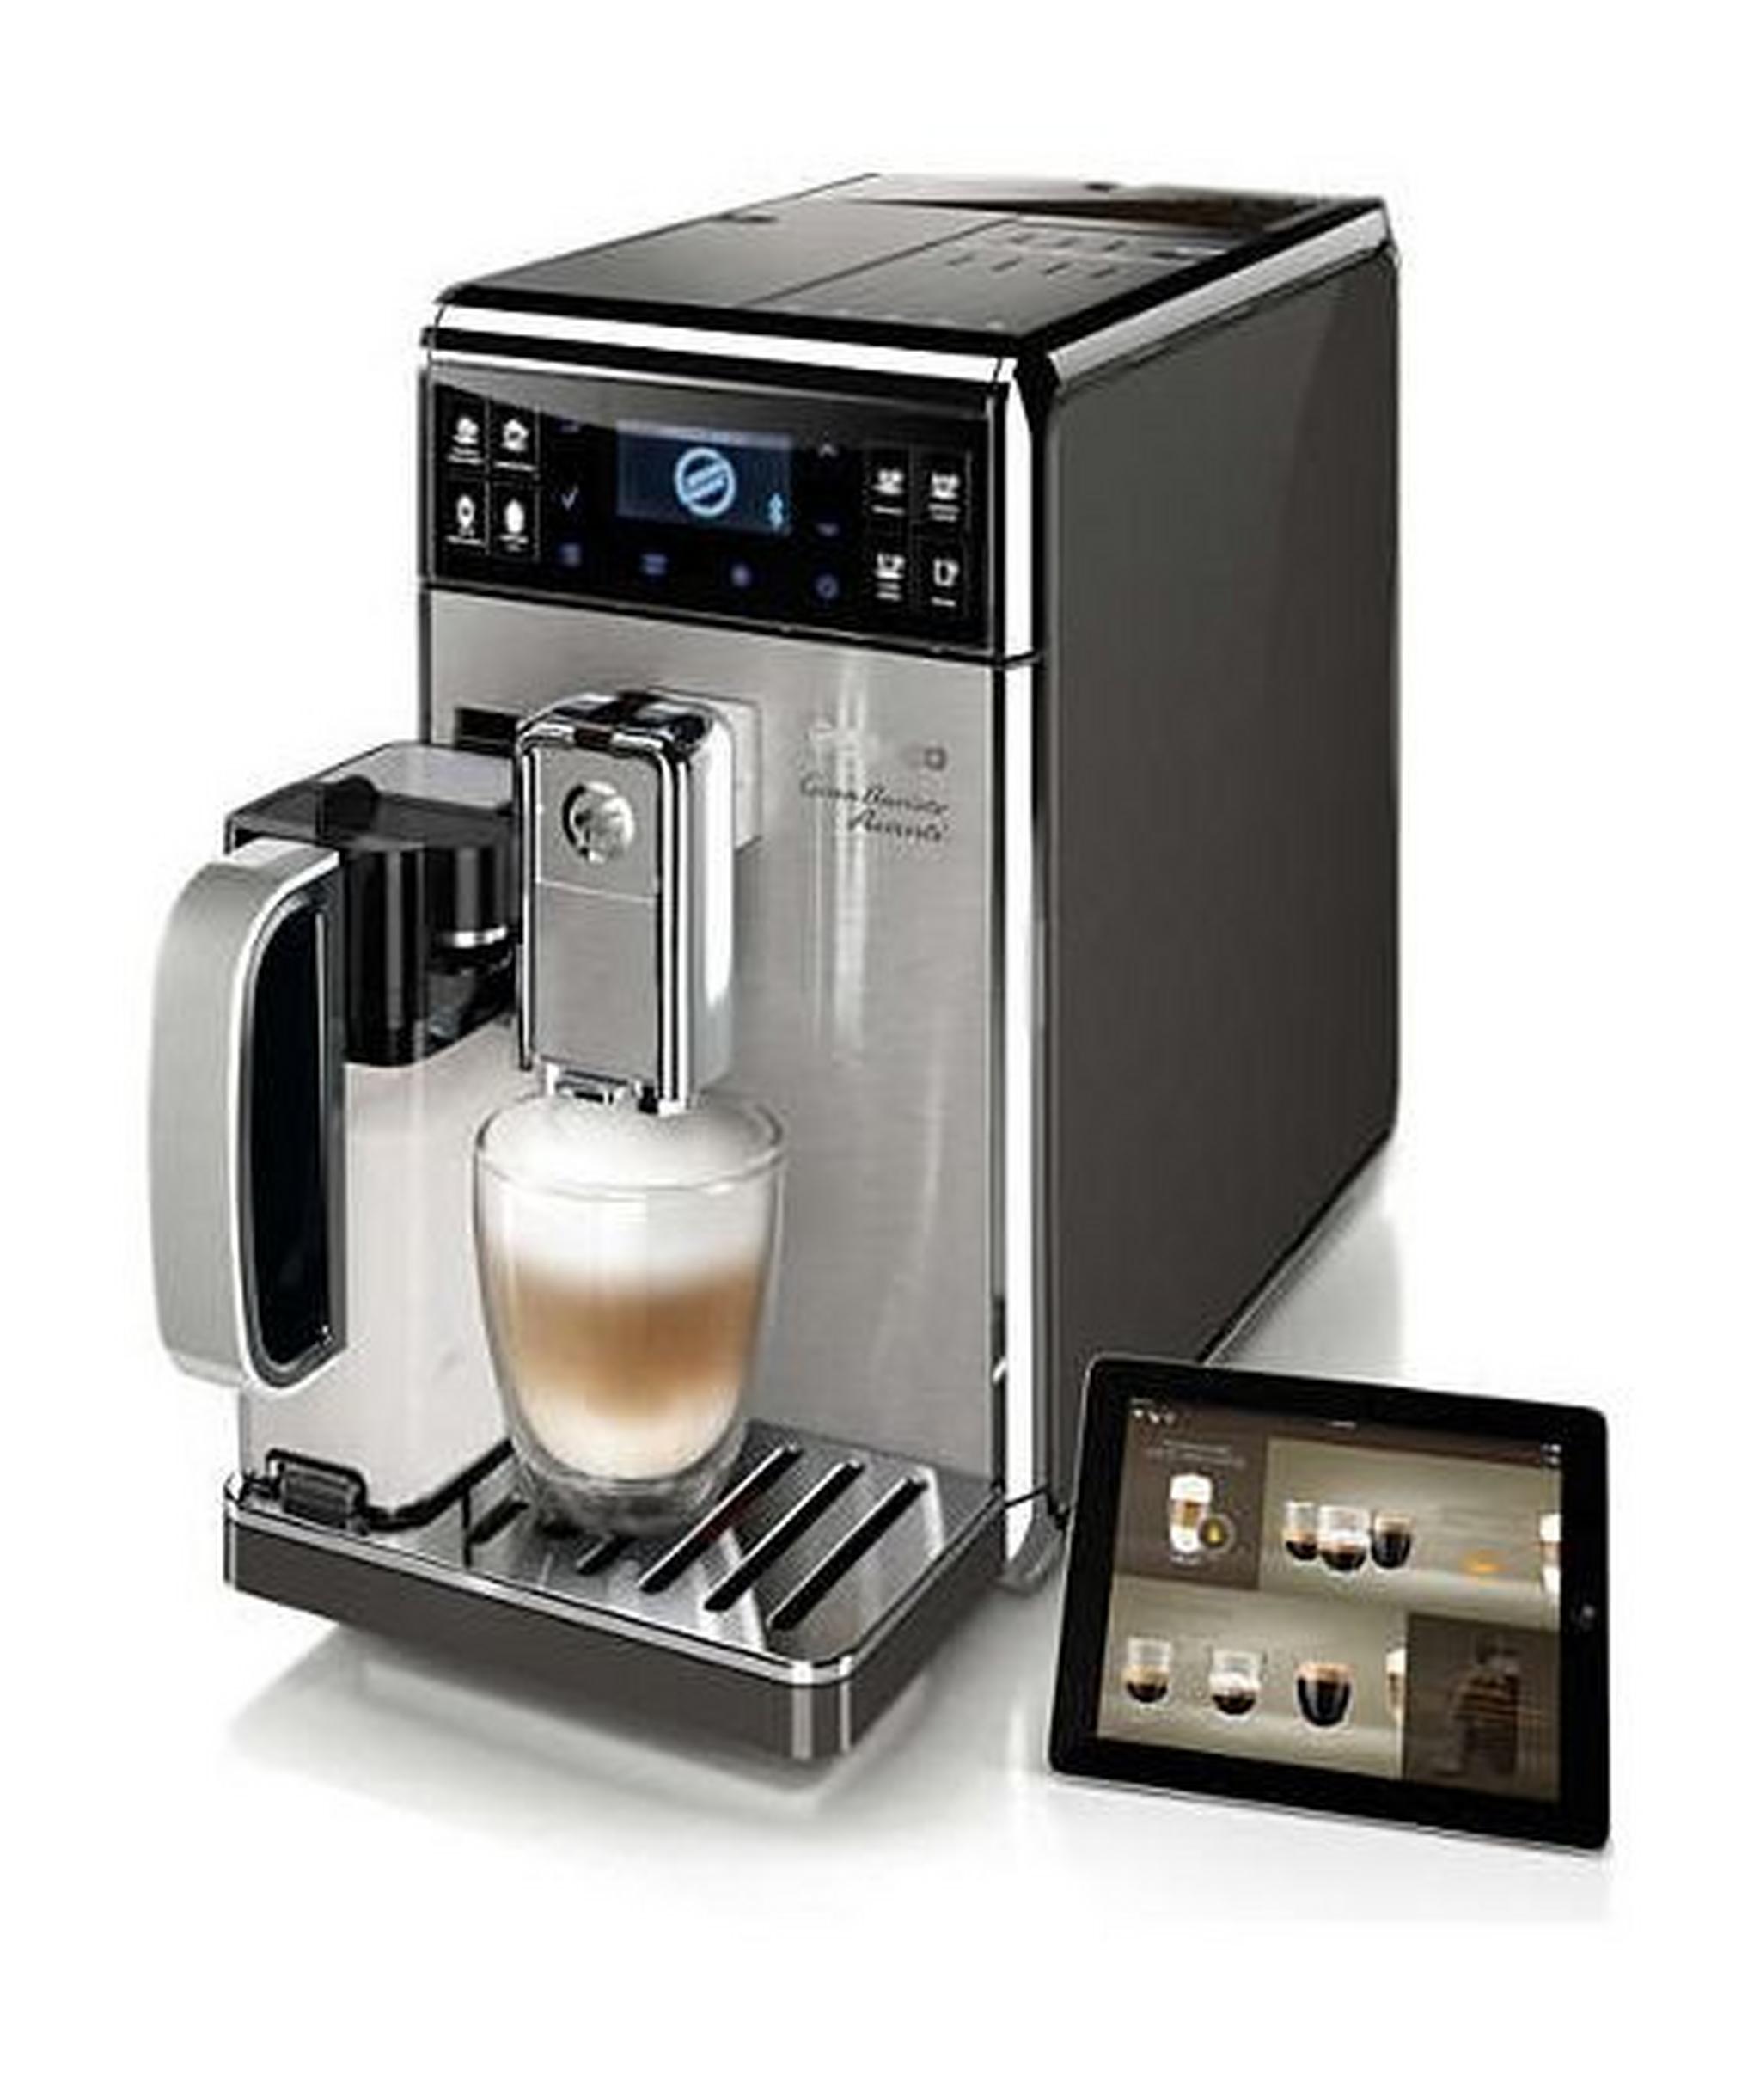 Philips Saeco GranBaristo Avanti Super-Automatic Espresso Machine (HD8977/01) – Black / Silver